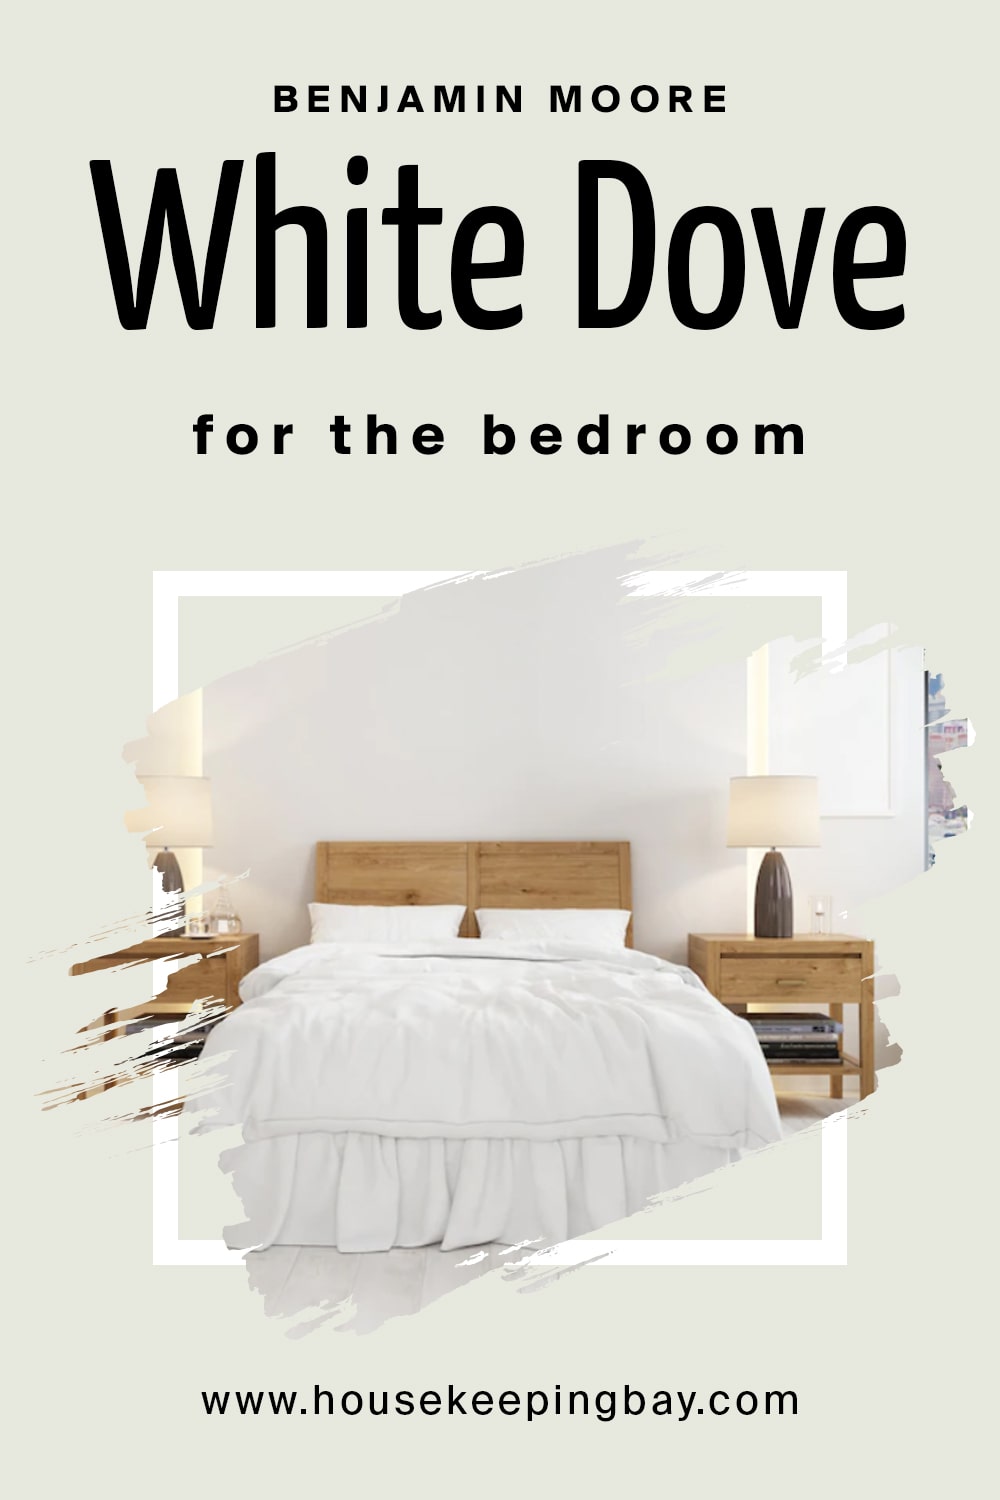 Benjamin Moore. White Dove for the bedroom